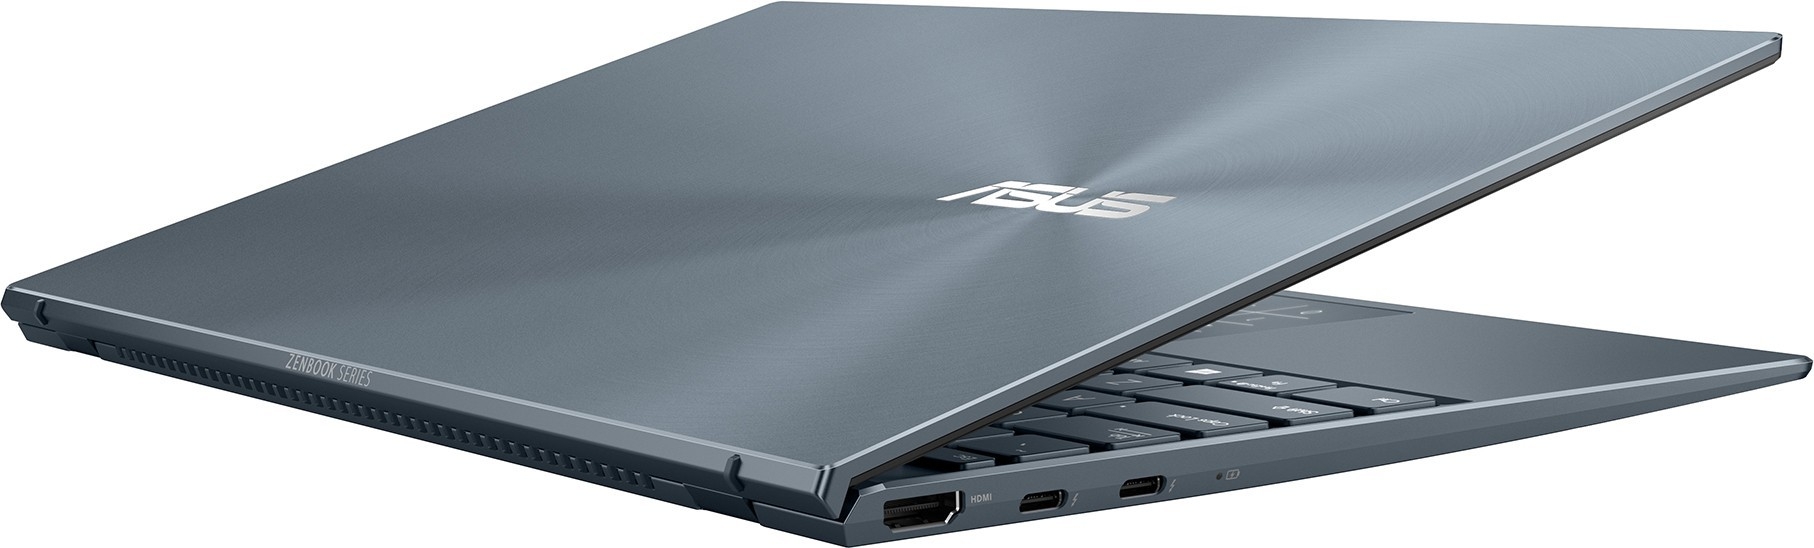 ASUS ZenBook 14 UX425EA-BM296 (Intel Core i3 1115G4 3000 МГц/14" IPS/1920x1080/8GB/512GB SSD/DVD нет/Intel UHD Graphics/noOS) 90NB0SM1-M06880